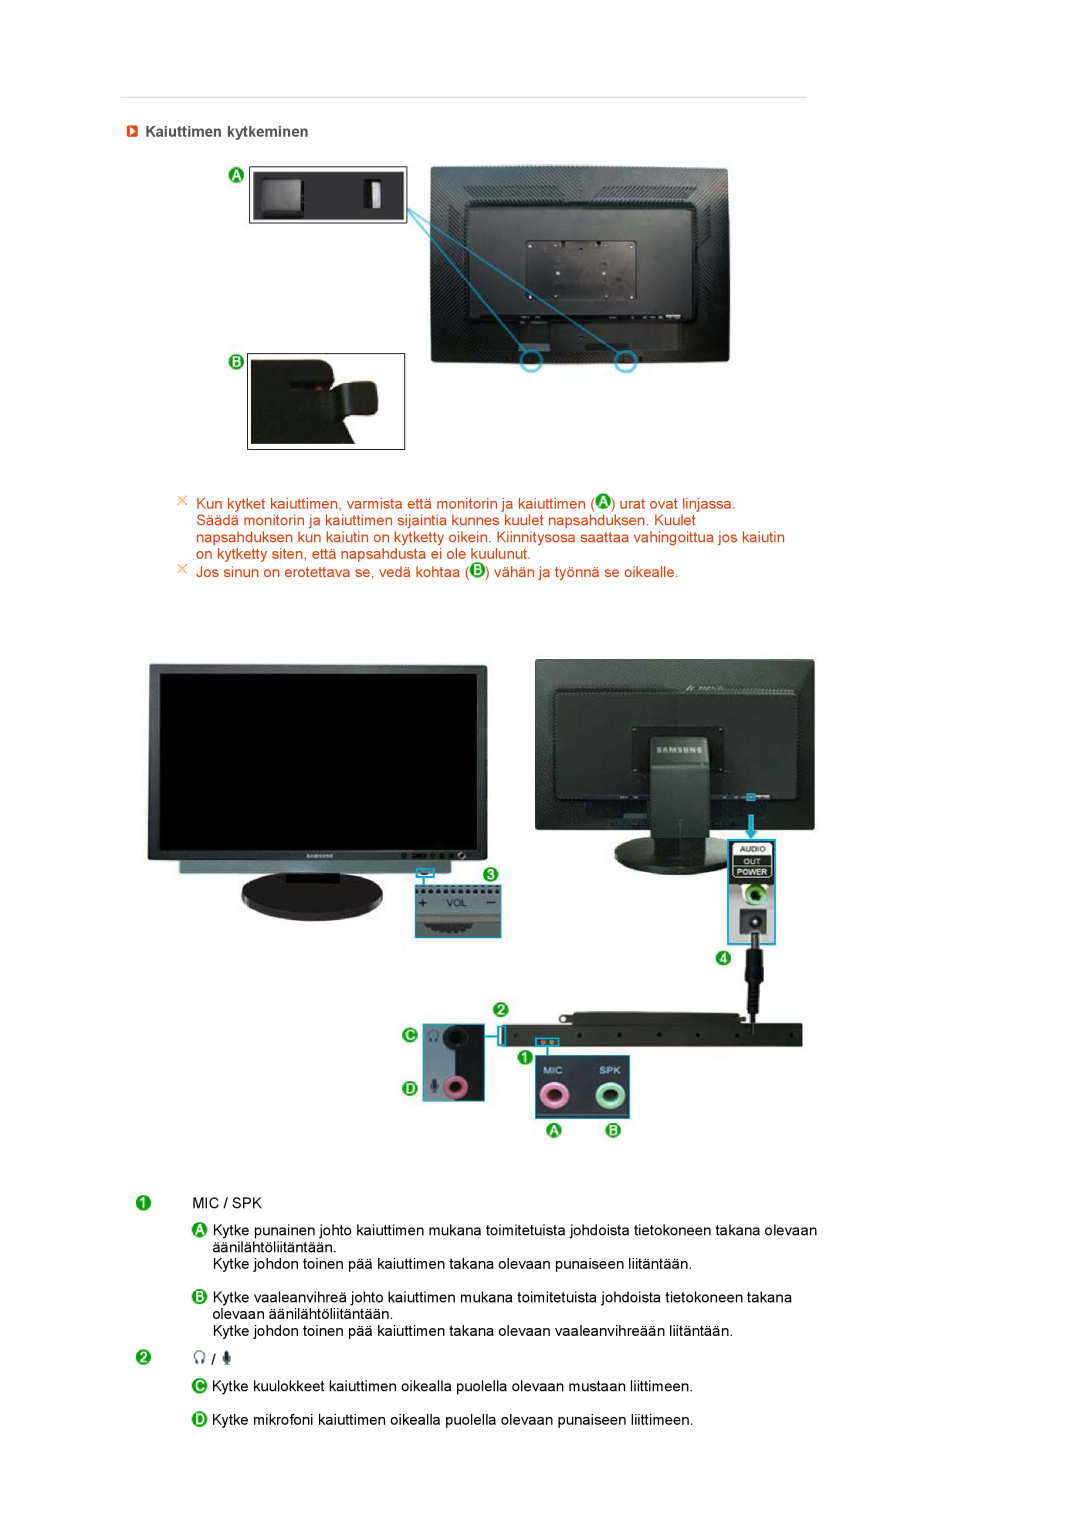 Samsung LS24HUCEBQ/EDC manual Kaiuttimen kytkeminen, Jos sinun on erotettava se, vedä kohtaa vähän ja työnnä se oikealle 